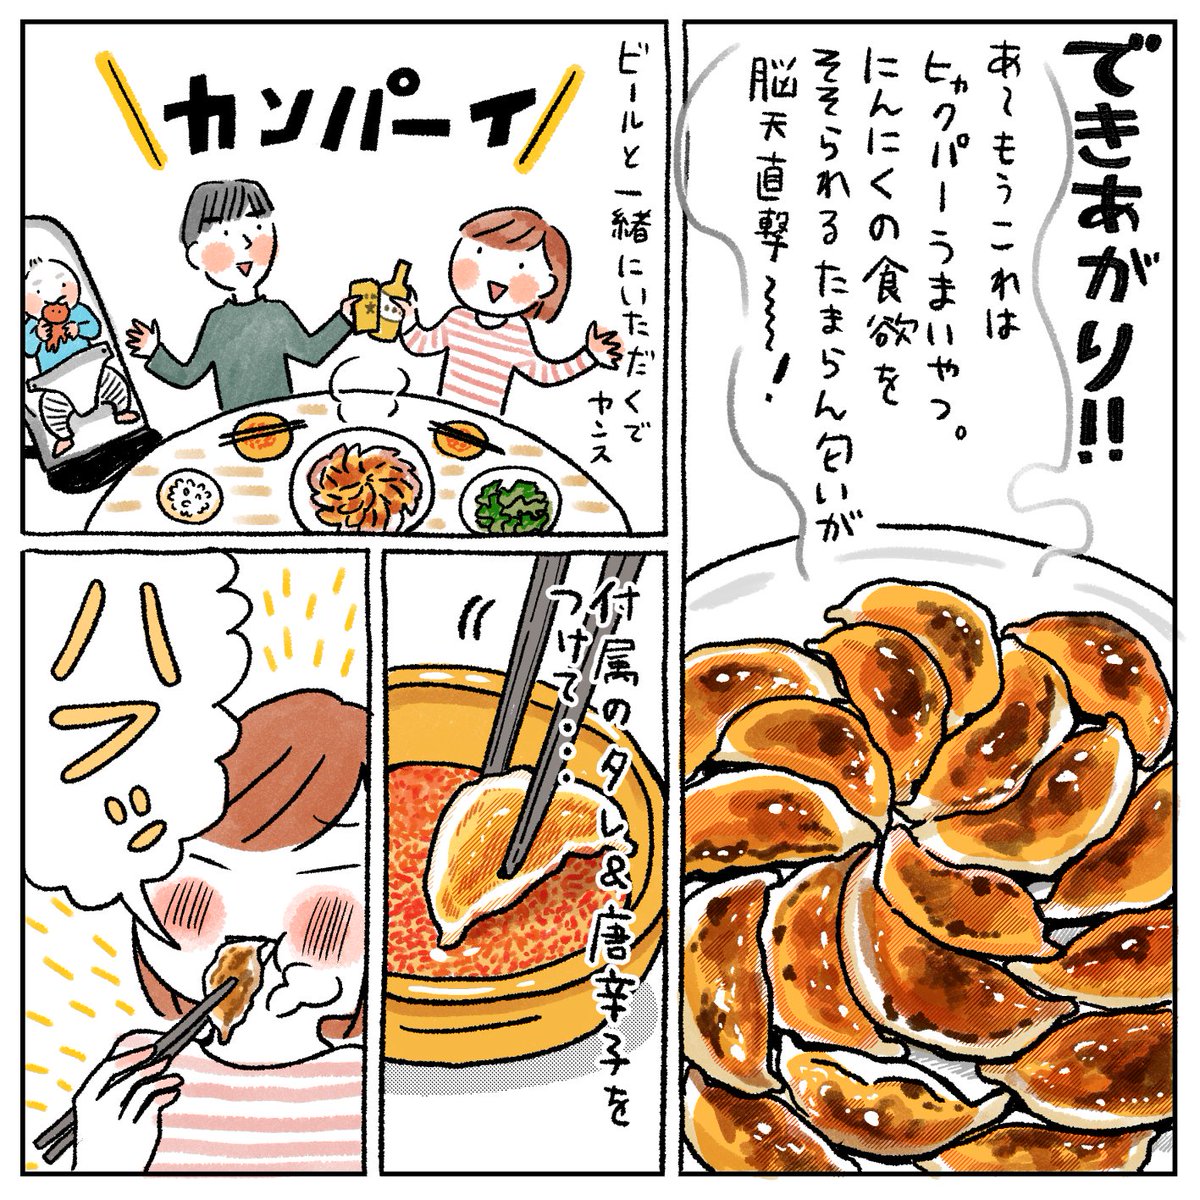 てらいまき 自家通販受付中 浜松の 餃子のまるかわ さんの餃子が美味しくて感動したので漫画を描いてしまいました は また食べたい コミックエッセイ 食べ物イラスト 浜松餃子